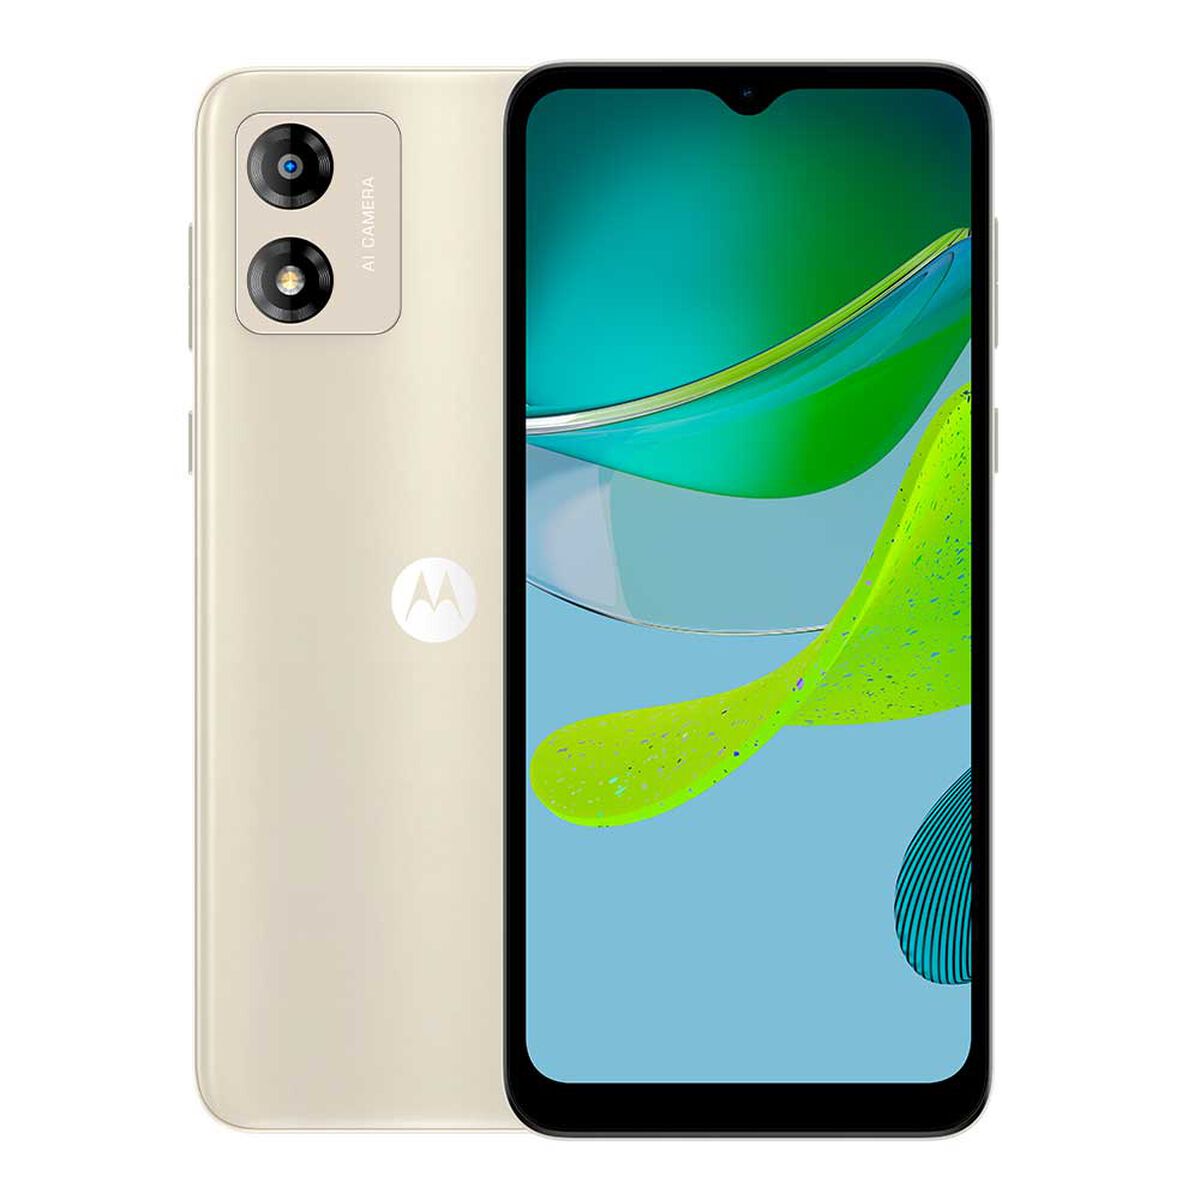 Motorola presenta 5 móviles baratos para todos los gustos